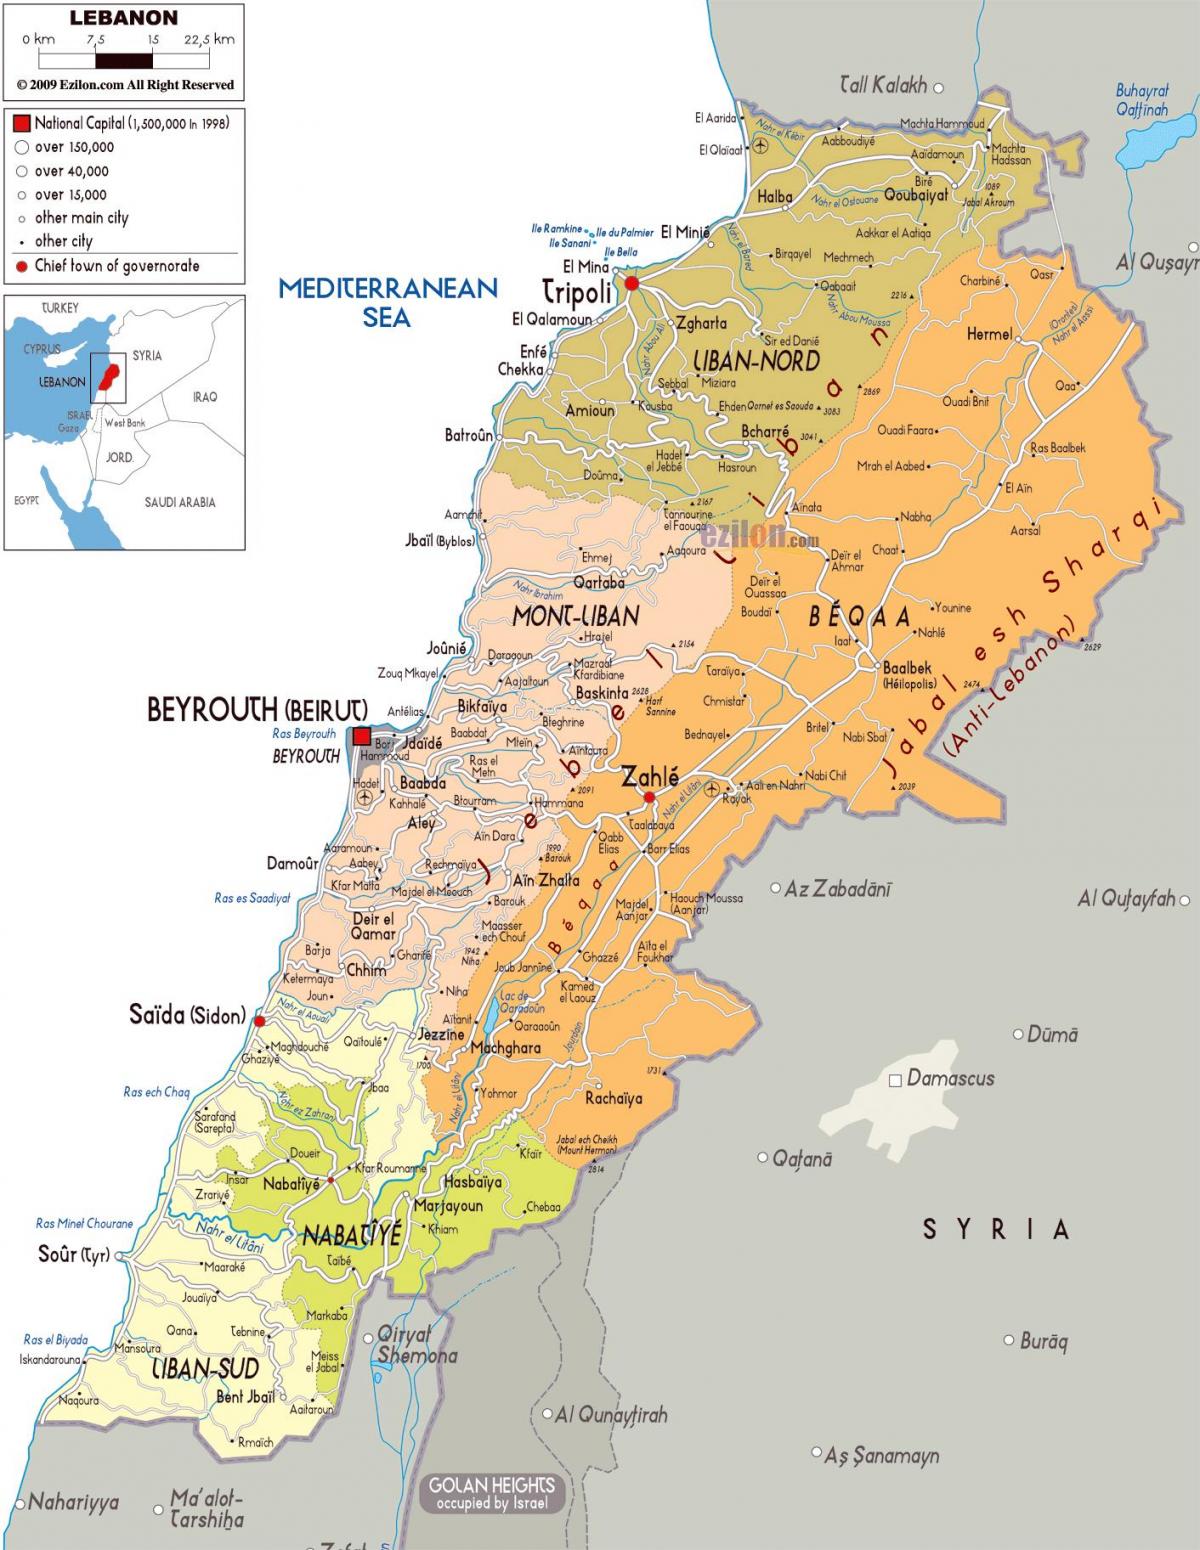 レバノン地図の詳細